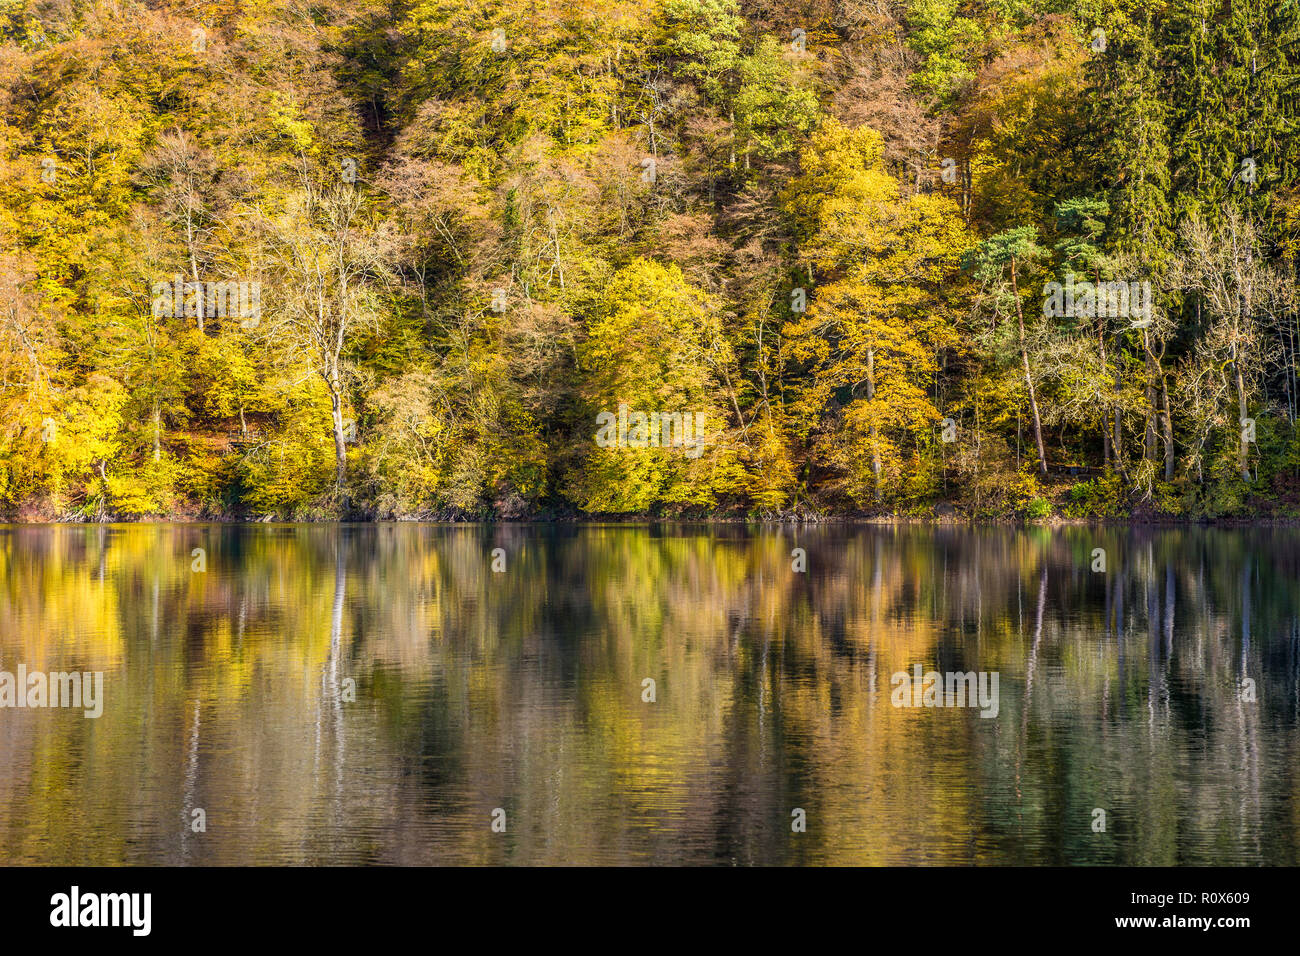 Trees in autumn and reflection in lake, Ulmen Maar, Ulmen, West Eifel Volcanic Field, Rhineland region, Germany, Europe Stock Photo